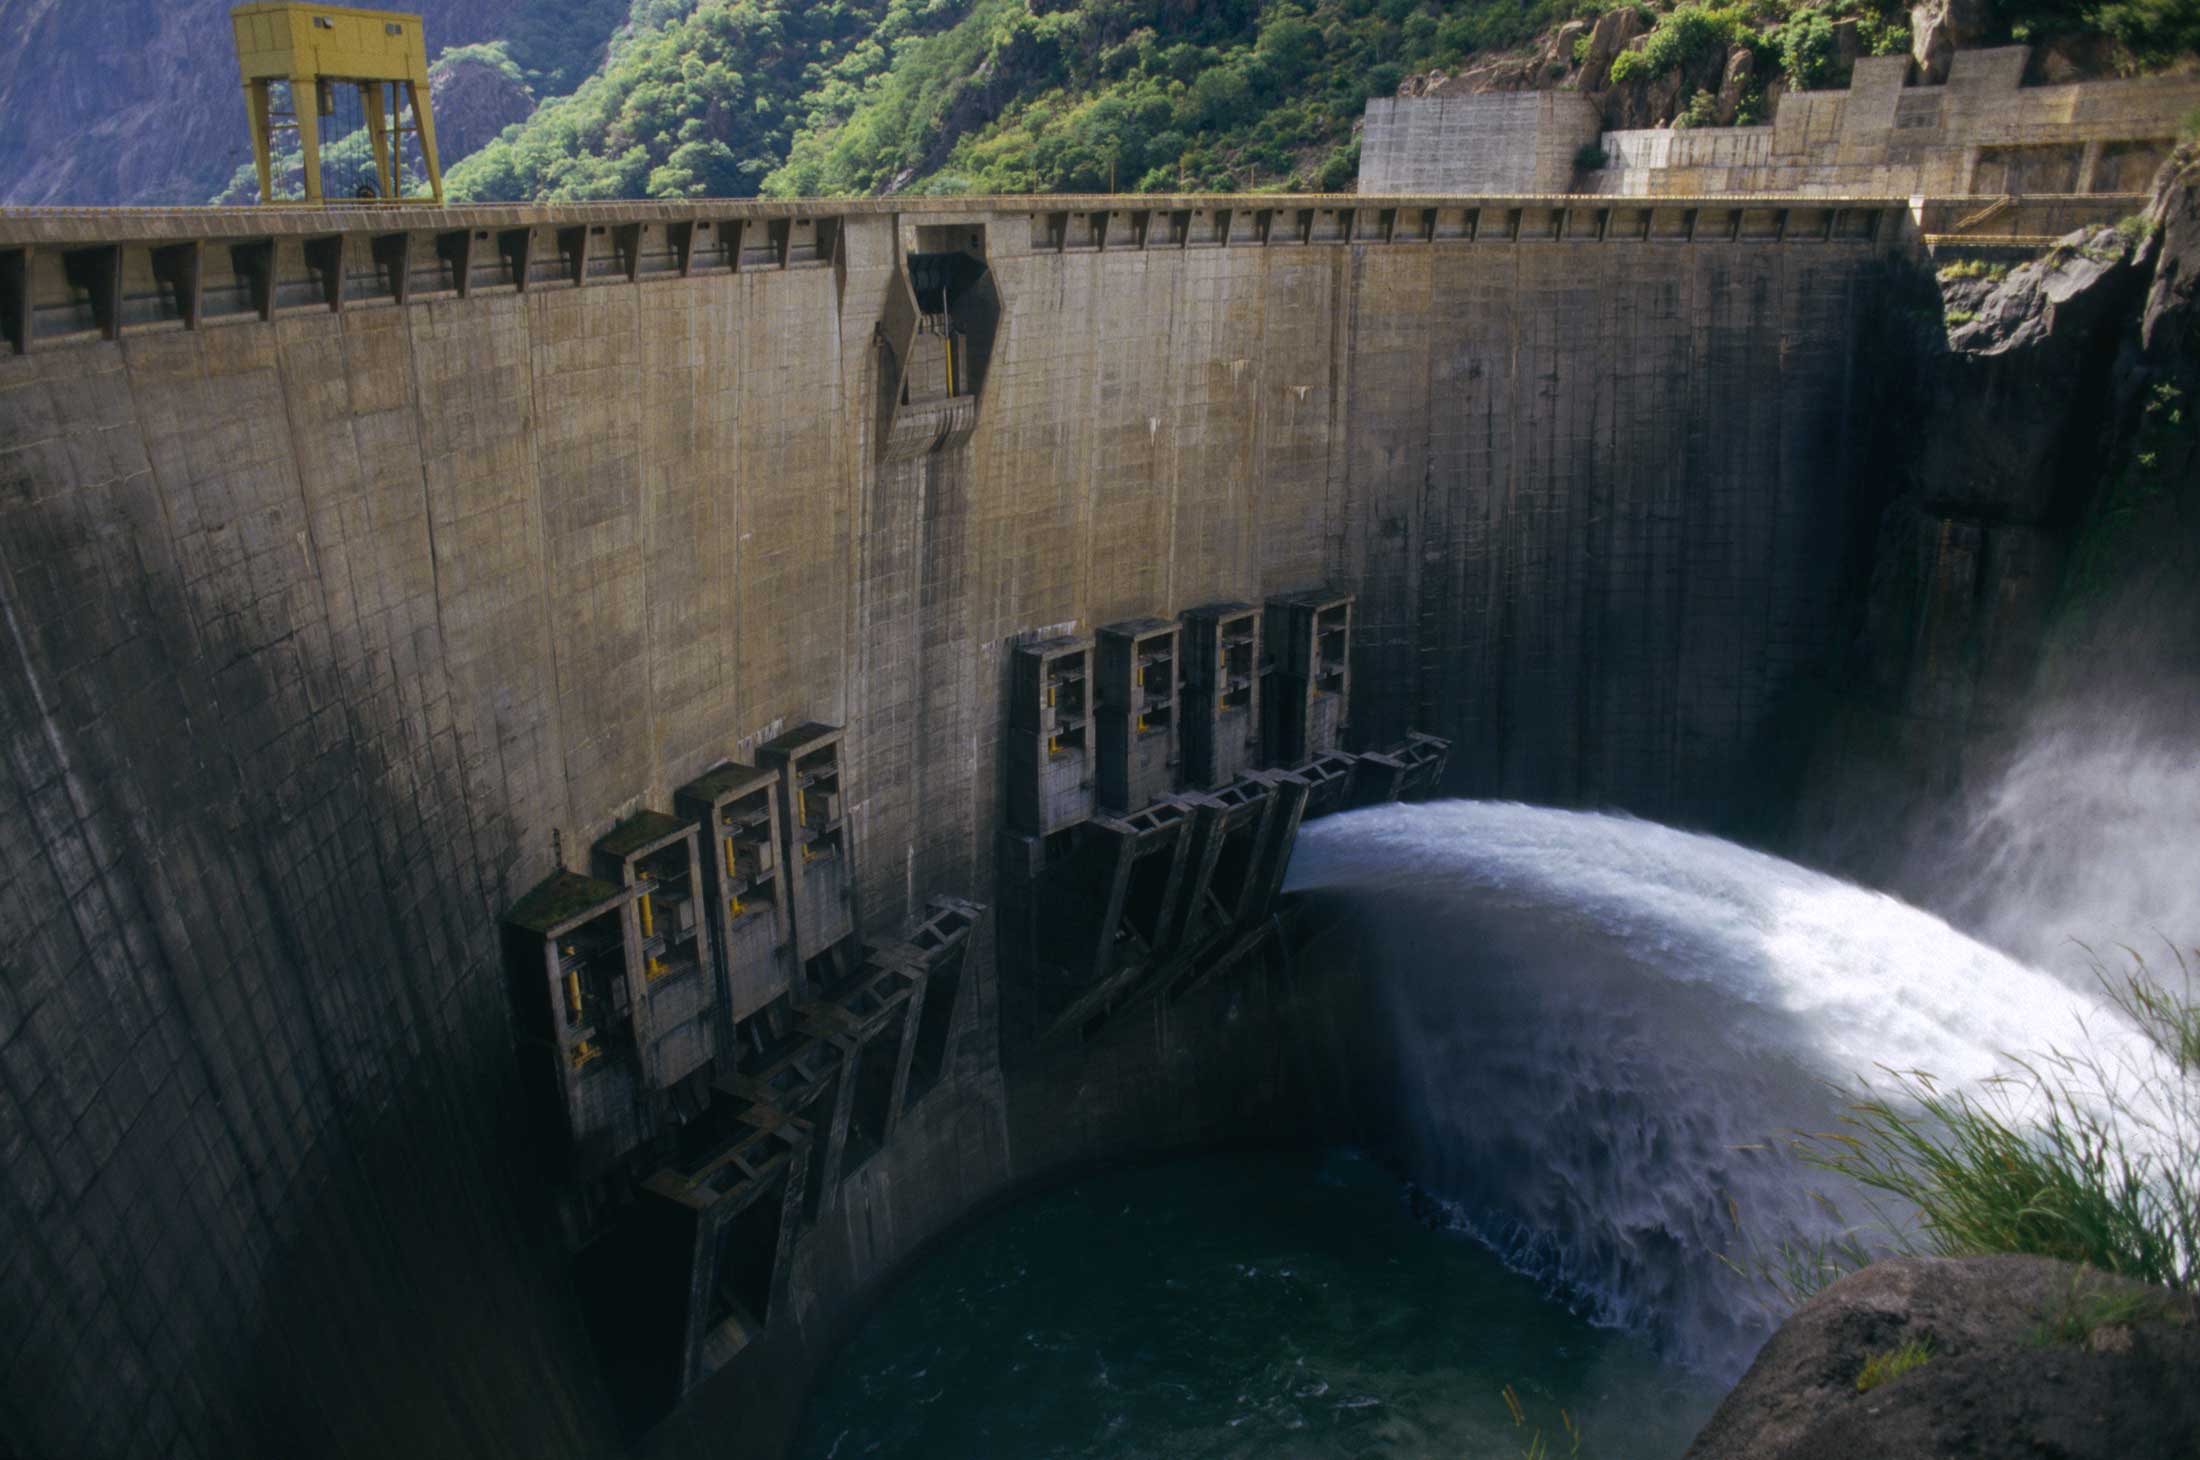 The Cahora Bassa dam.